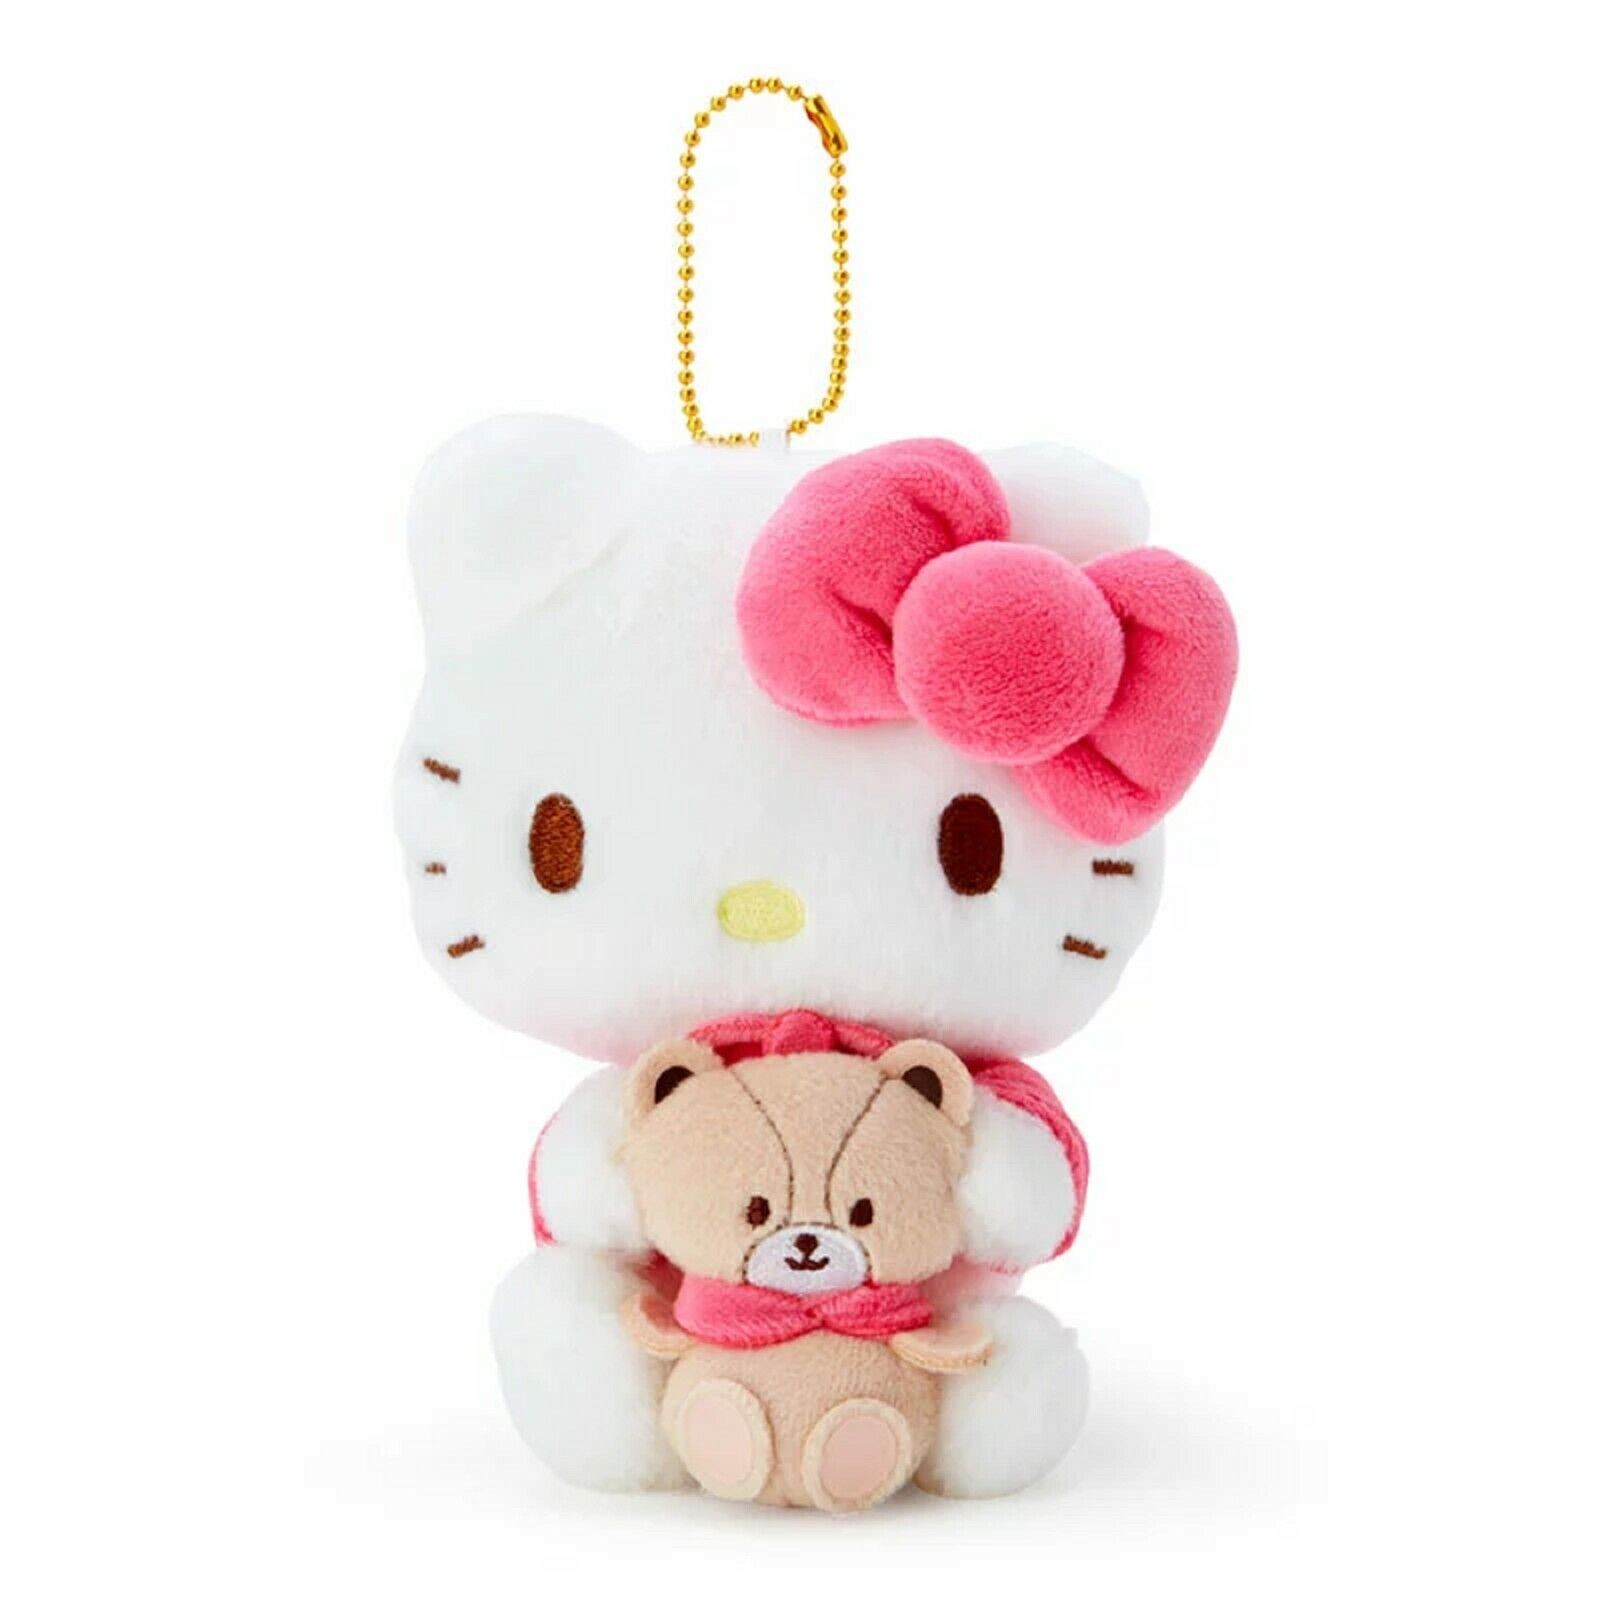 Sanrio Hello Kitty Pair Mascot Holder ( Friends ) Plush Doll Bag Chain New Japan